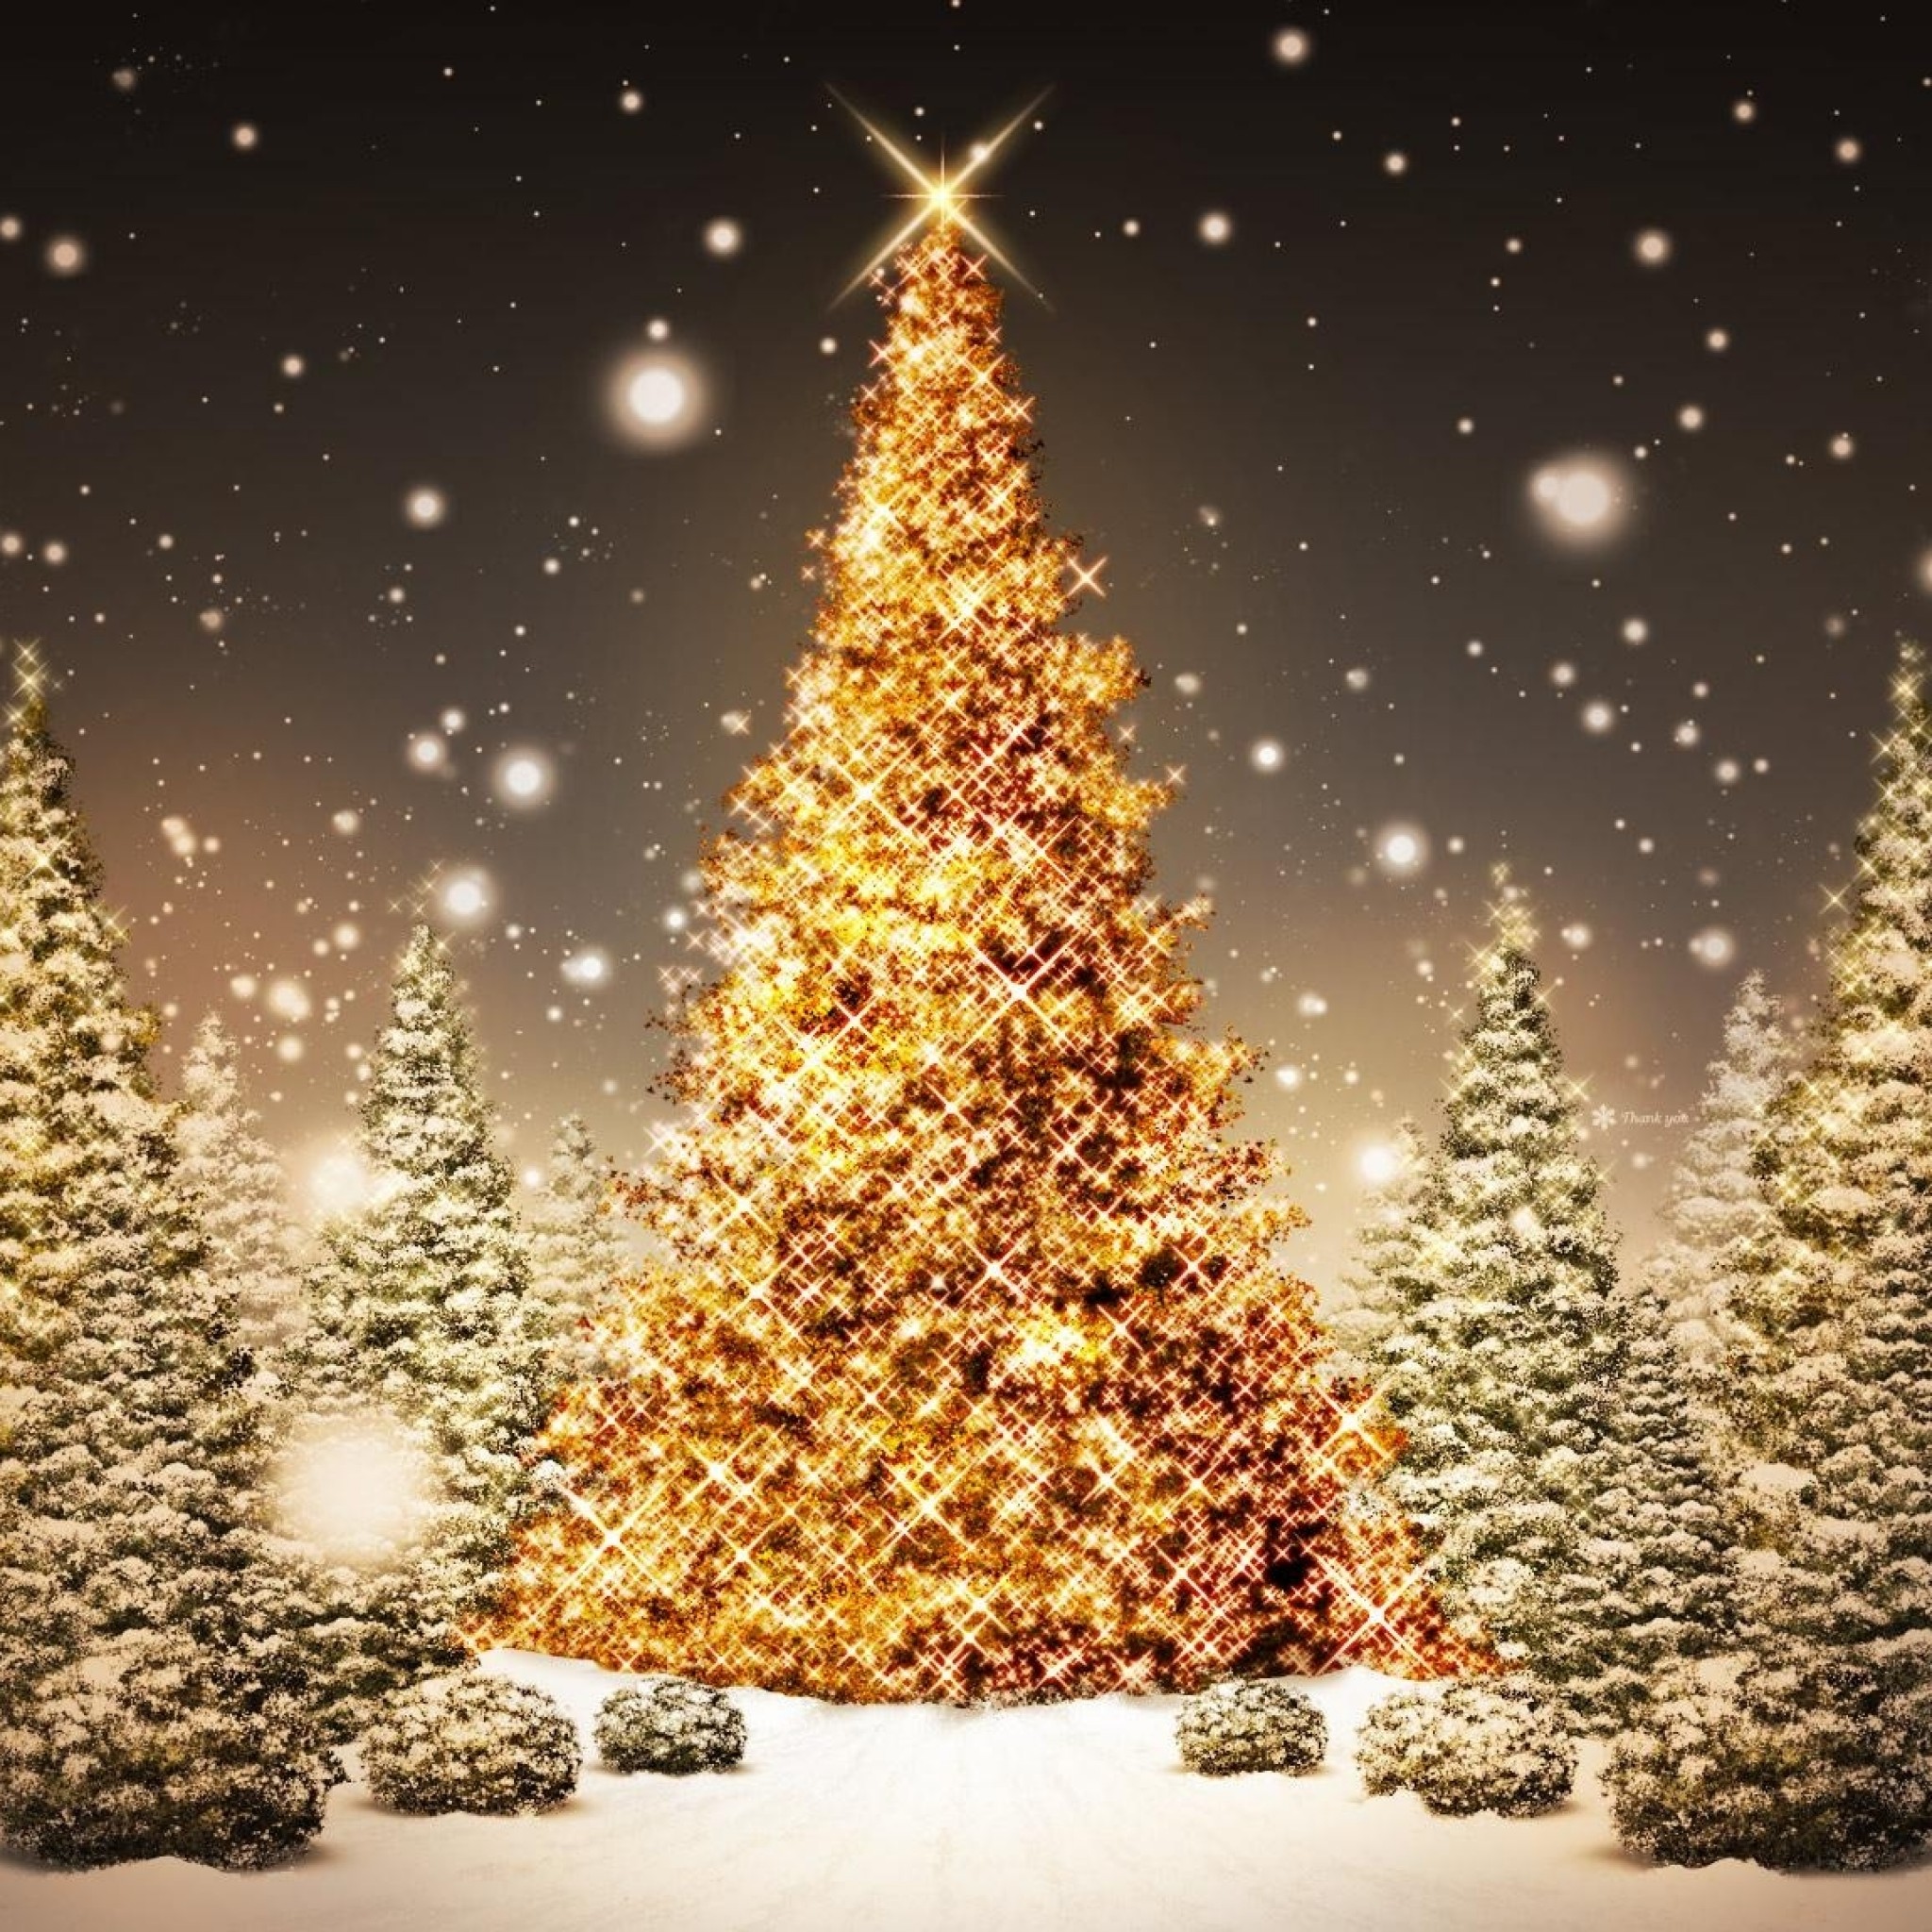 weihnachten ipad wallpaper,weihnachtsbaum,weihnachtsdekoration,baum,weihnachtsbeleuchtung,heiligabend